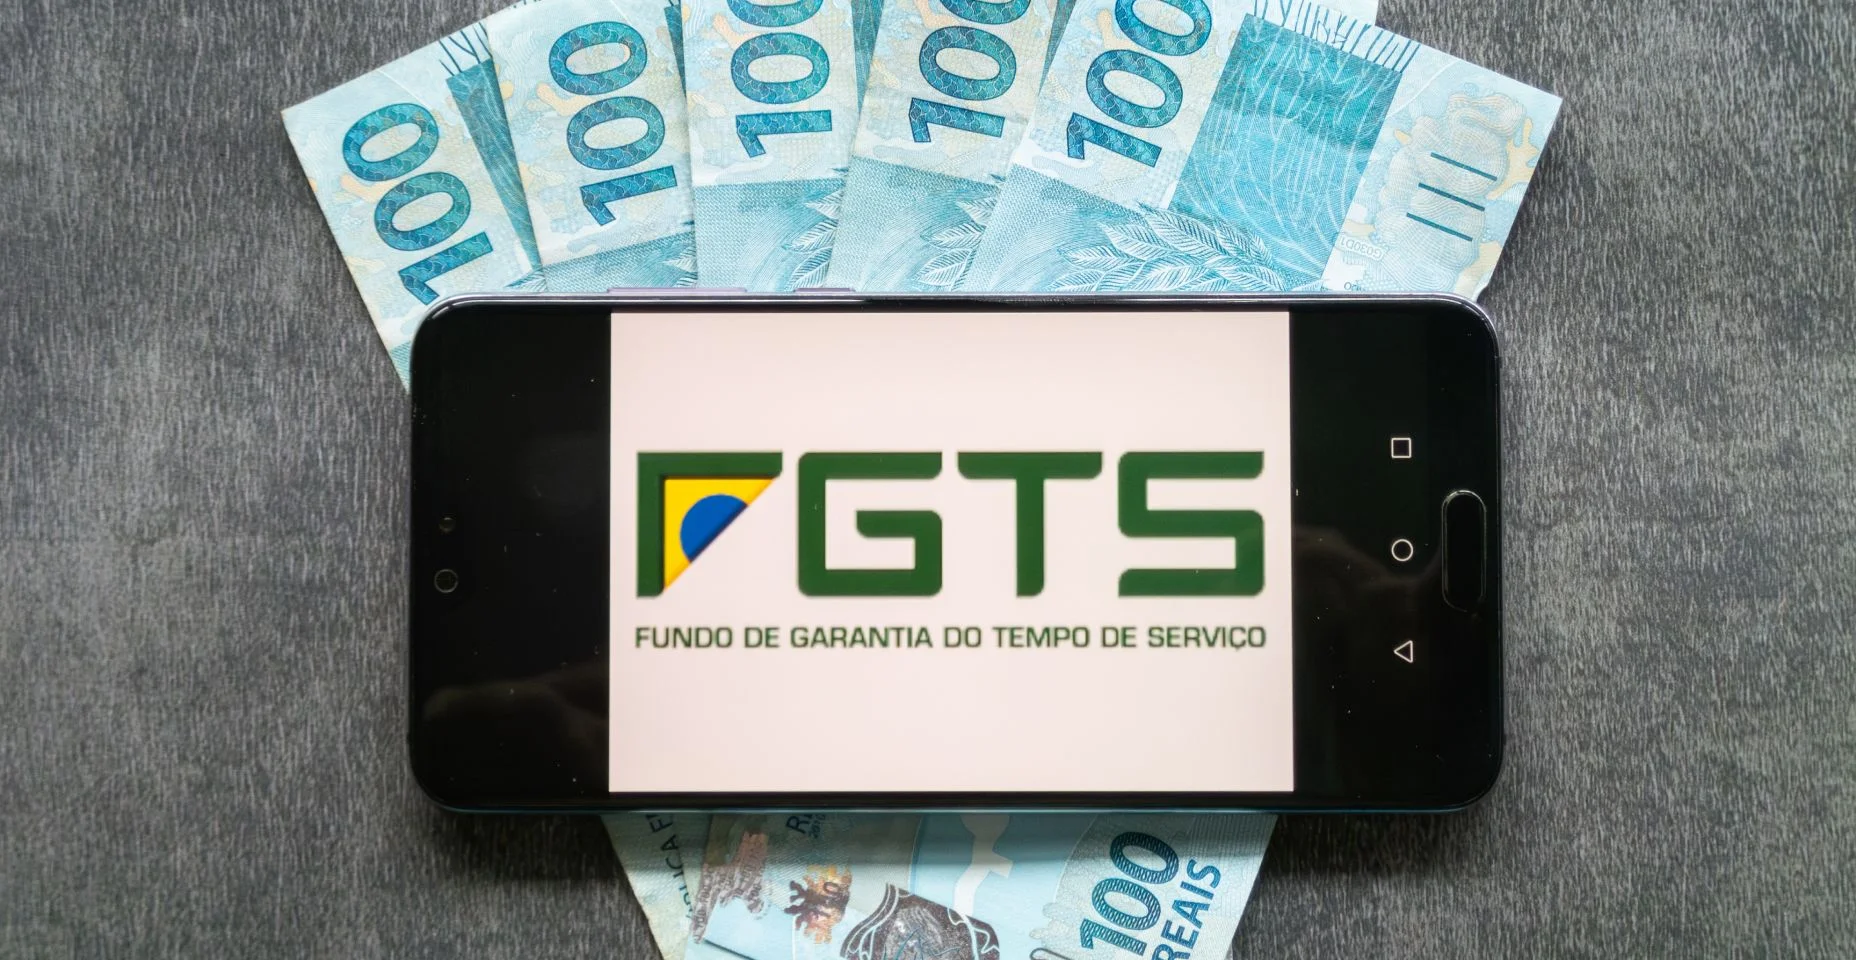 Aplicação do FGTS (Fundo Garantidor do Brasil) na tela do smartphone sobre cédulas de cem reais